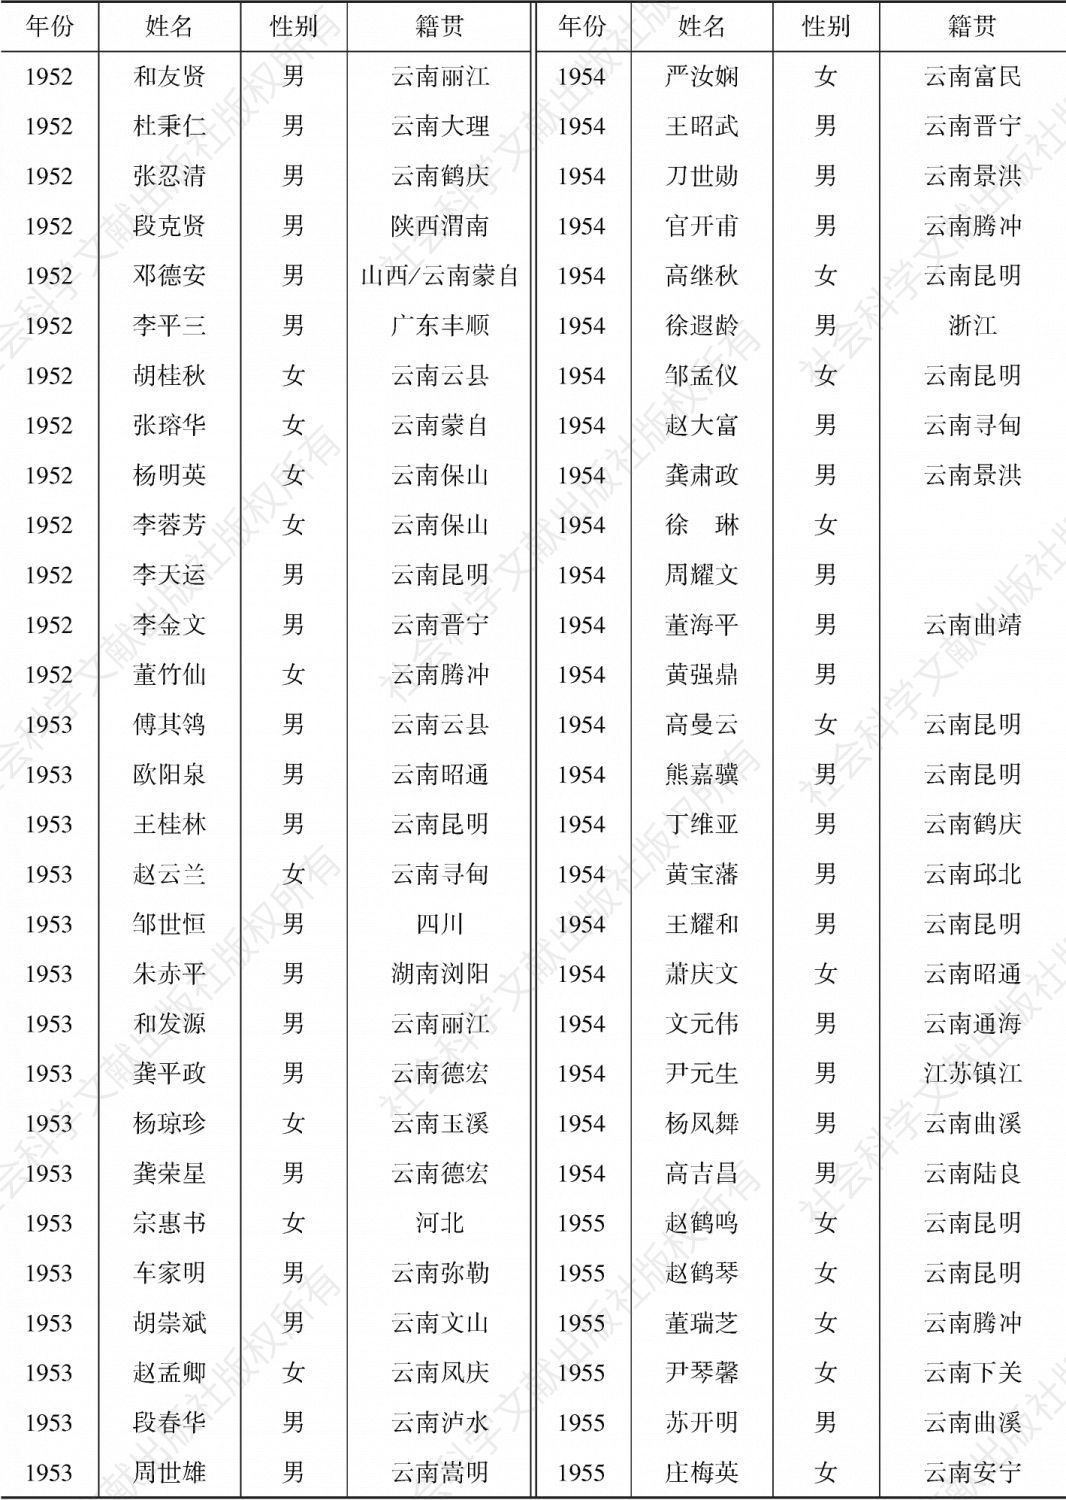 云南大学社会学系毕业学生名单-续表1